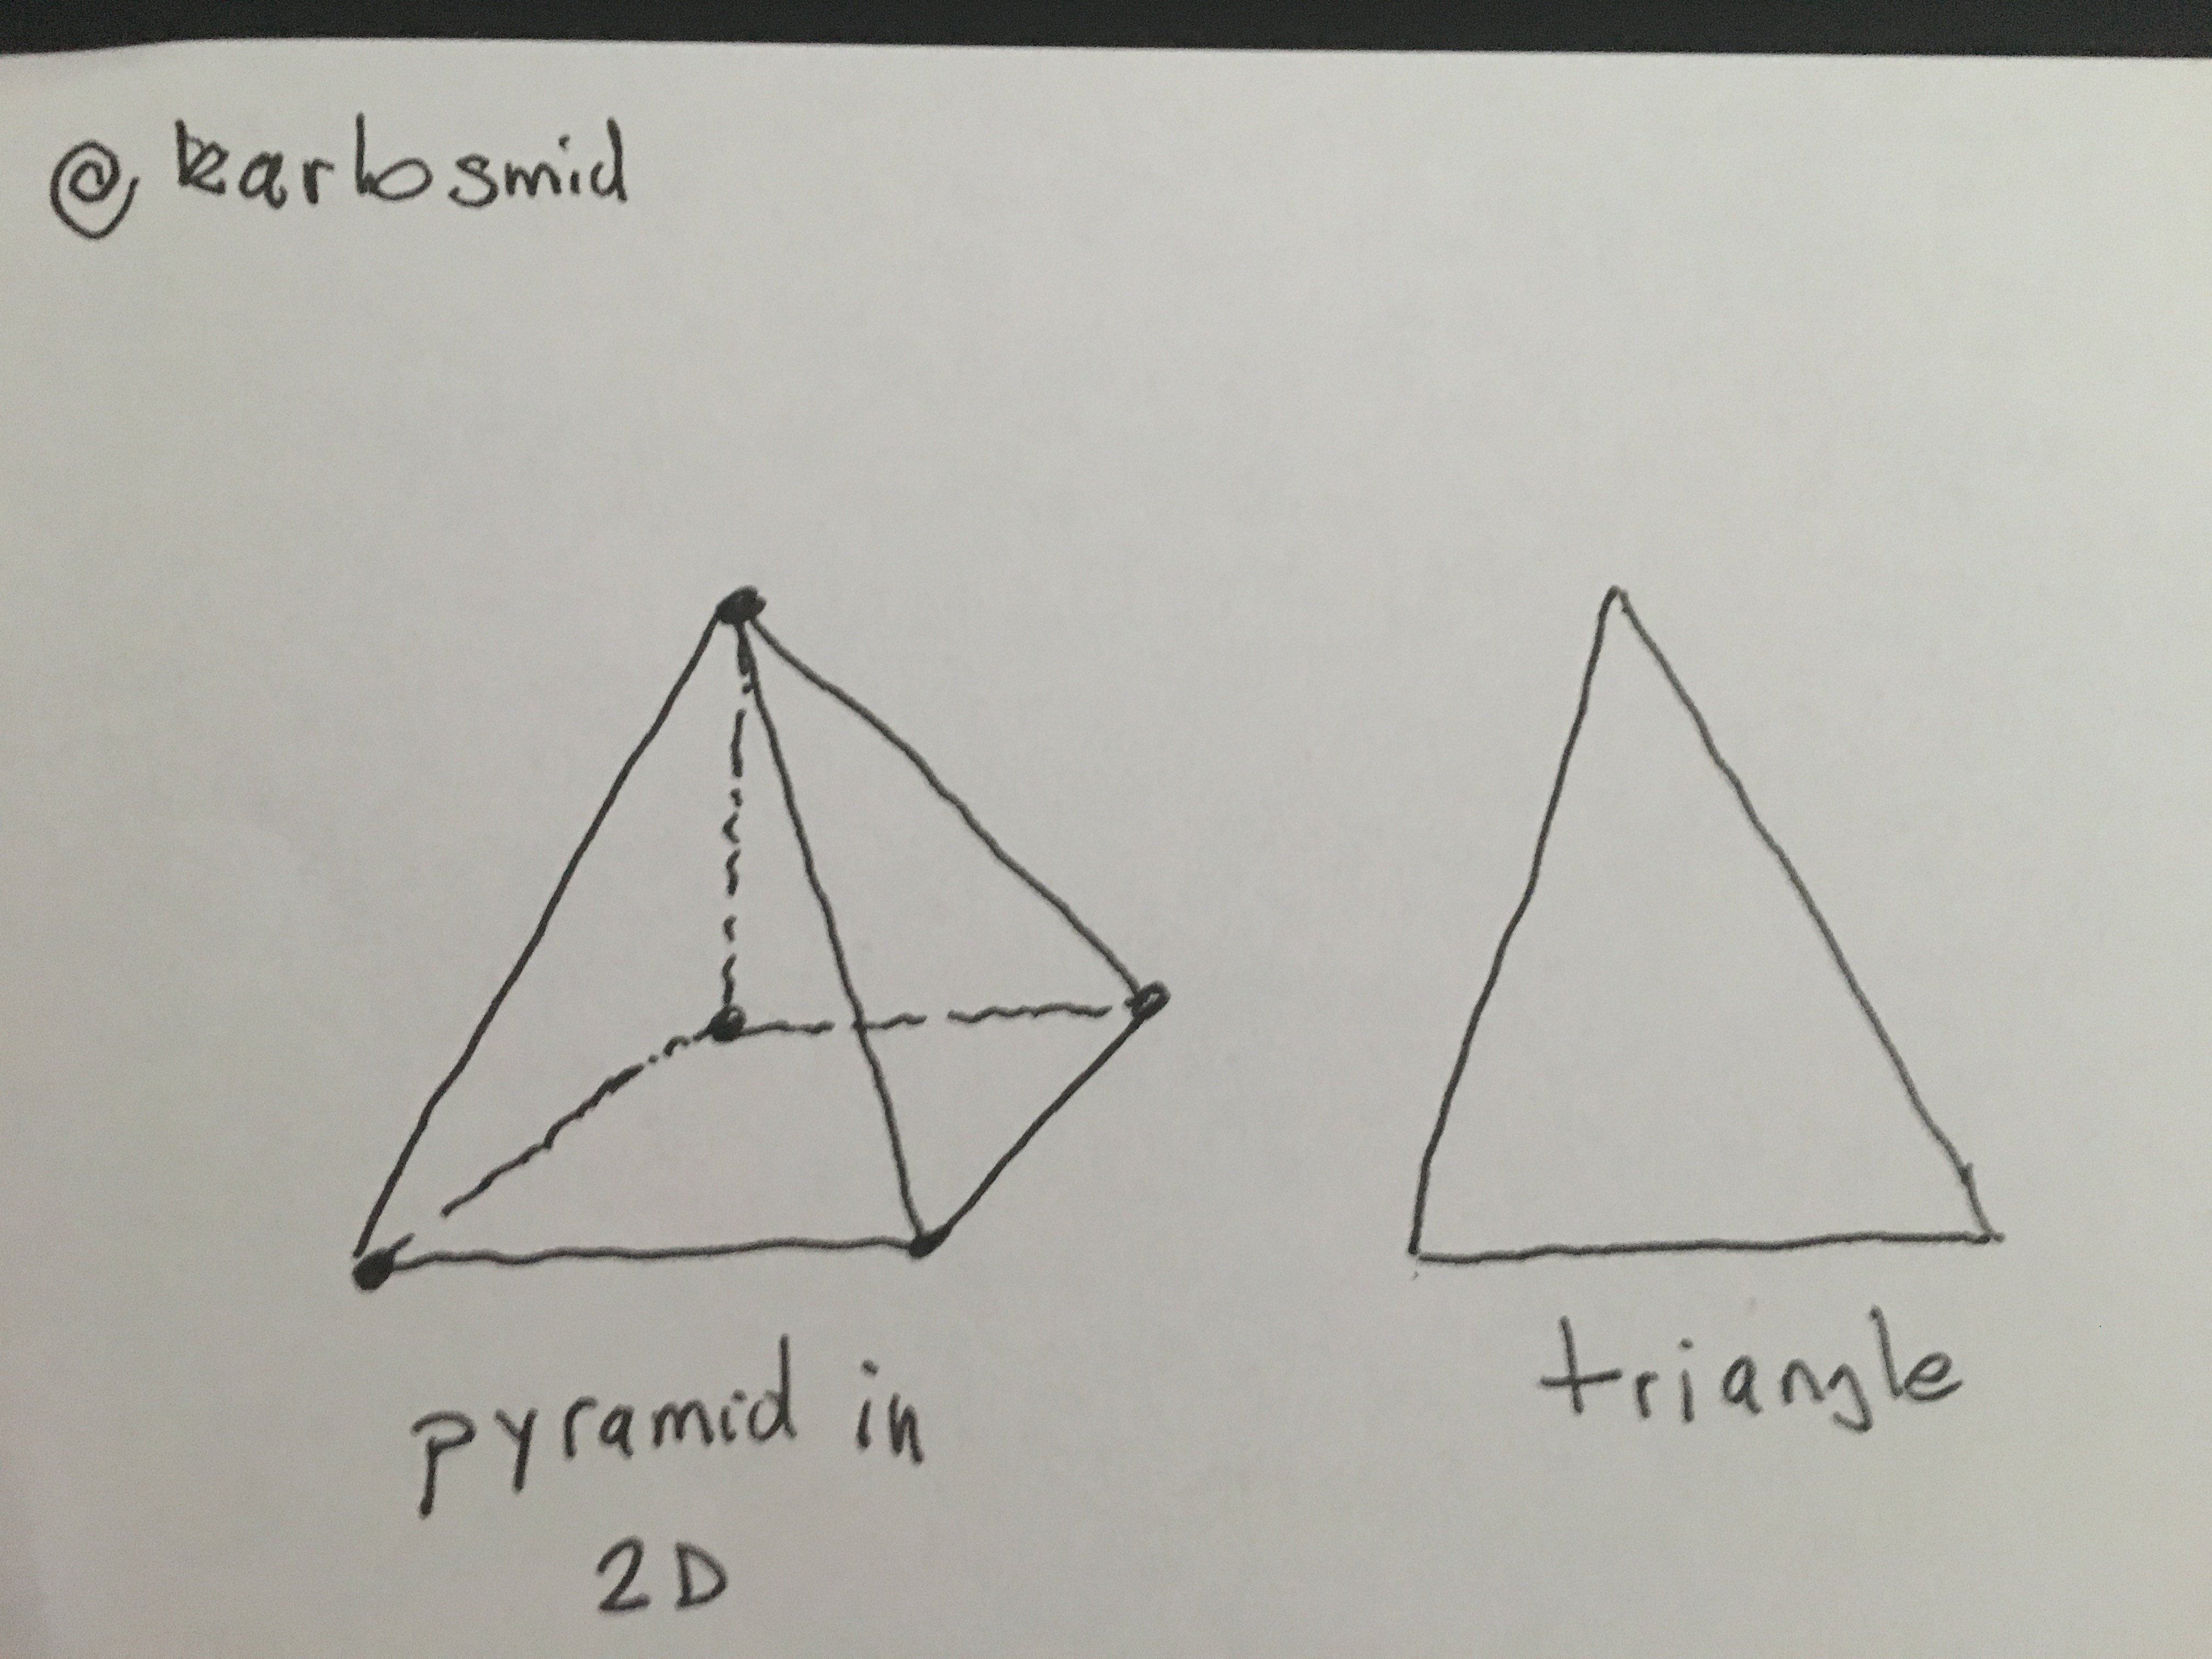 Demystified testing pyramid